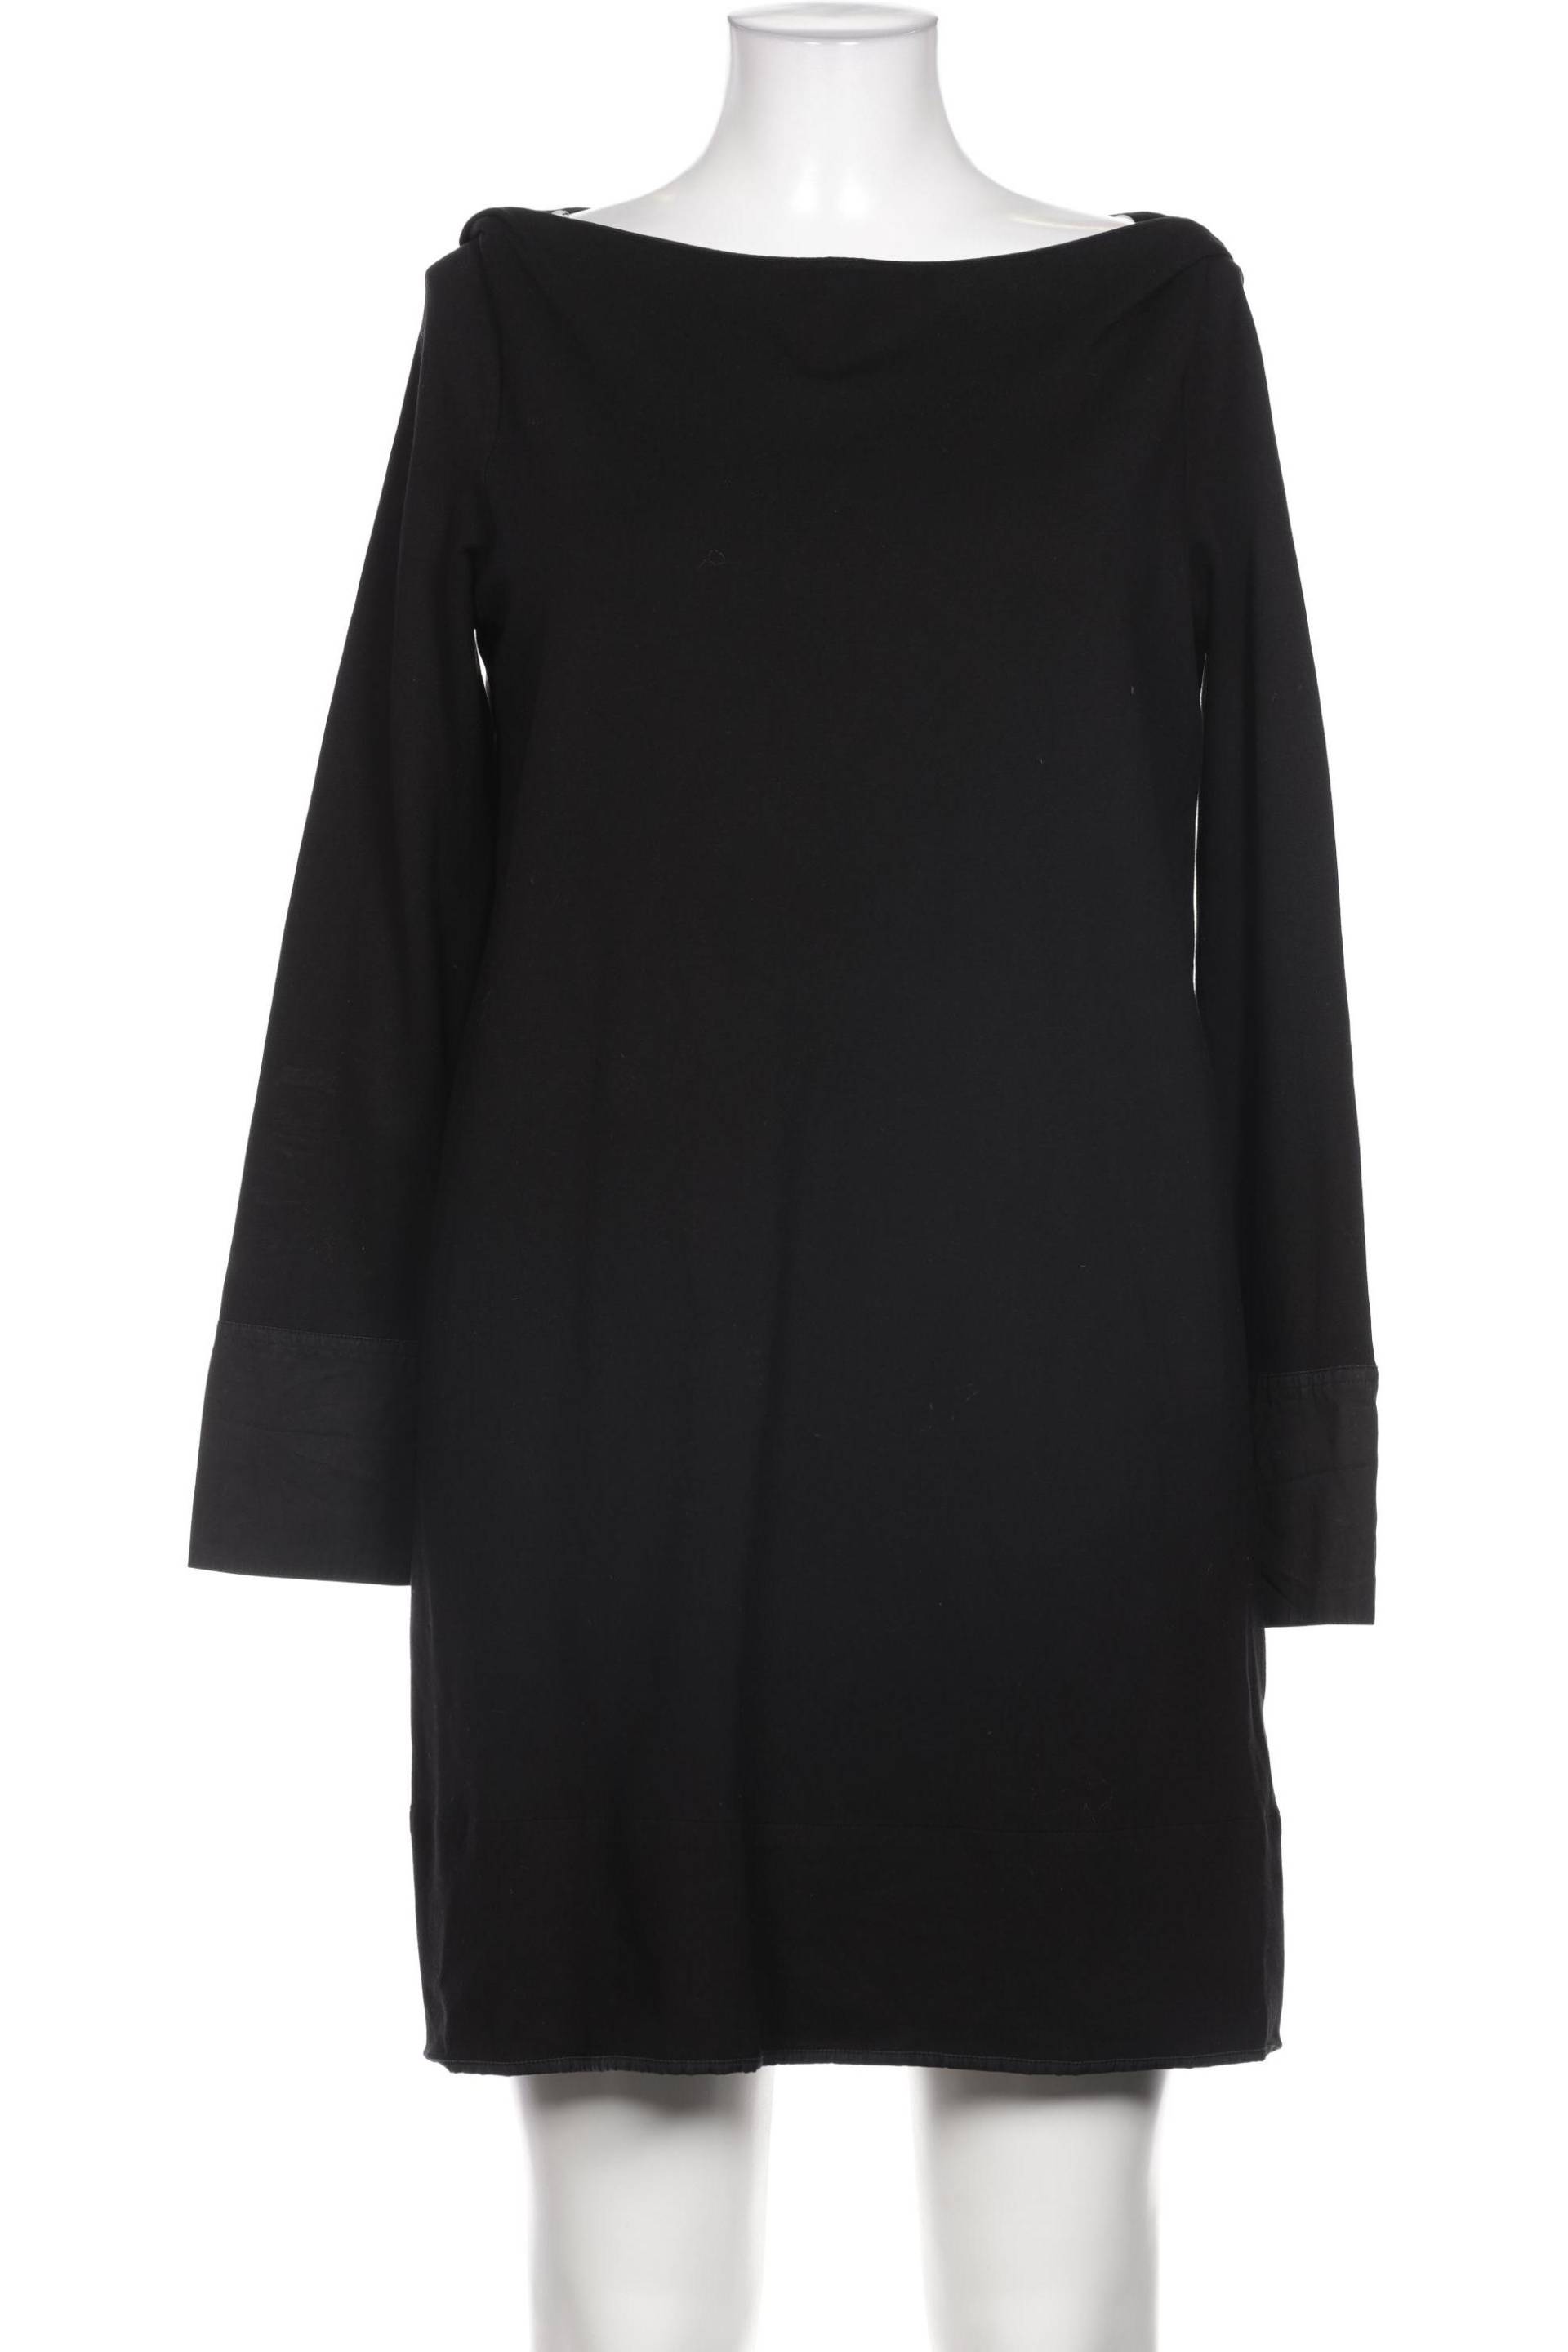 COS Damen Kleid, schwarz, Gr. 42 von COS